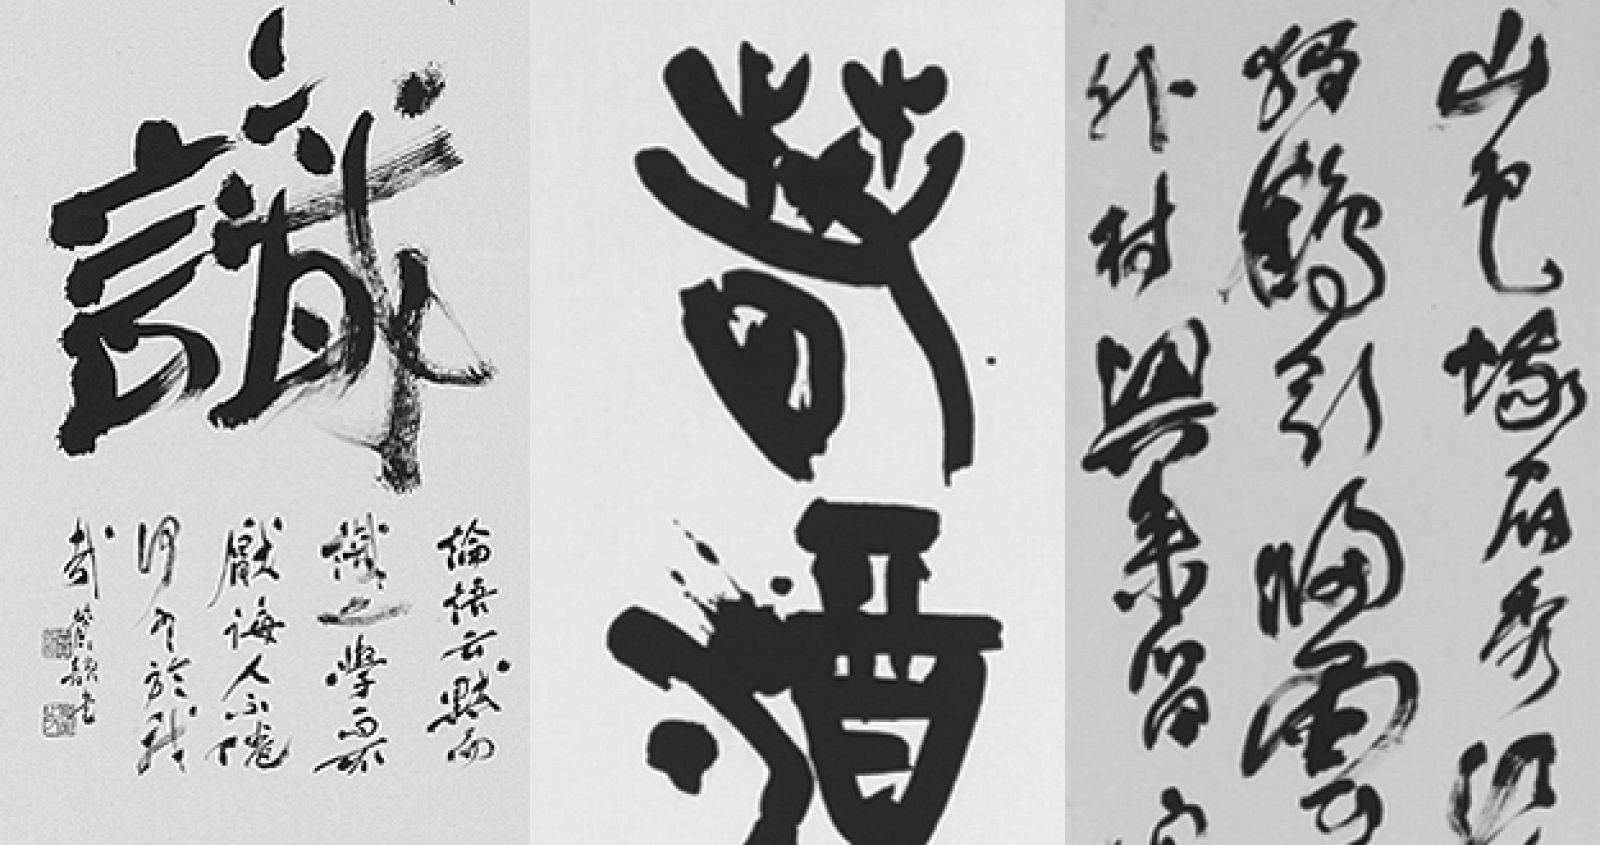 Algunas caligrafías japonesas que se pueden ver en la muestra